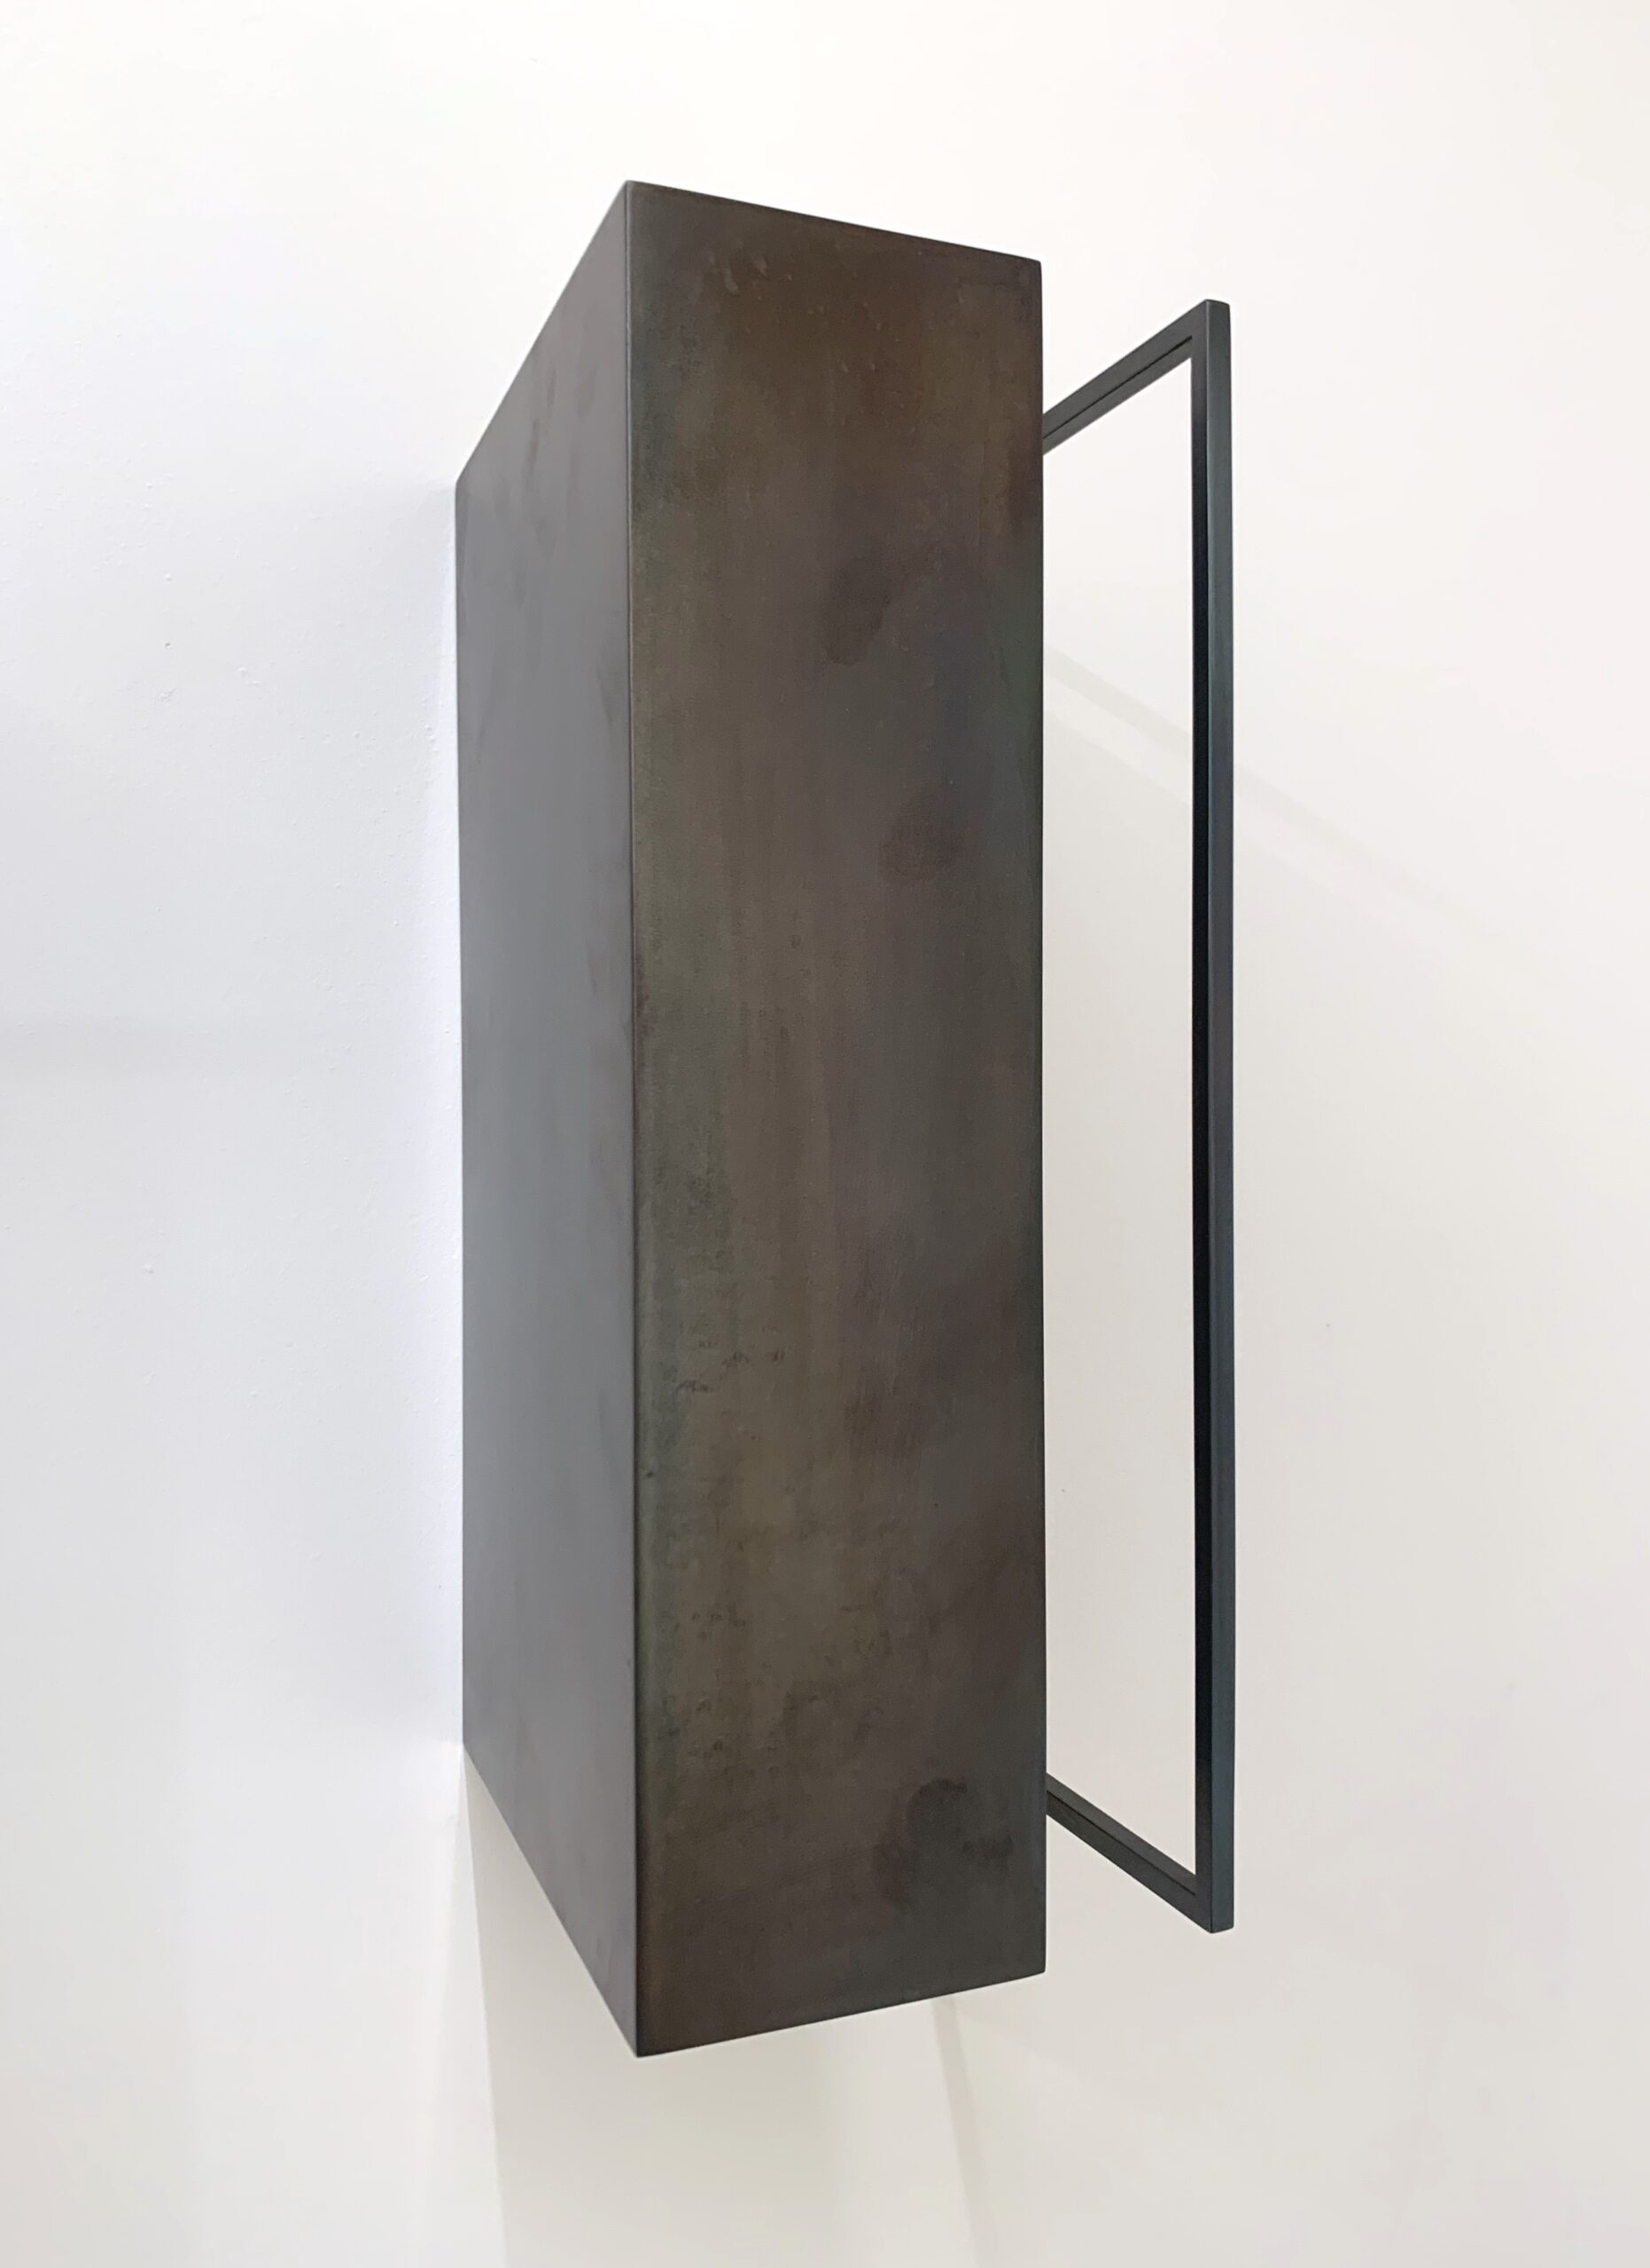 Riki Mijling, R.S.-V, steel sculpture